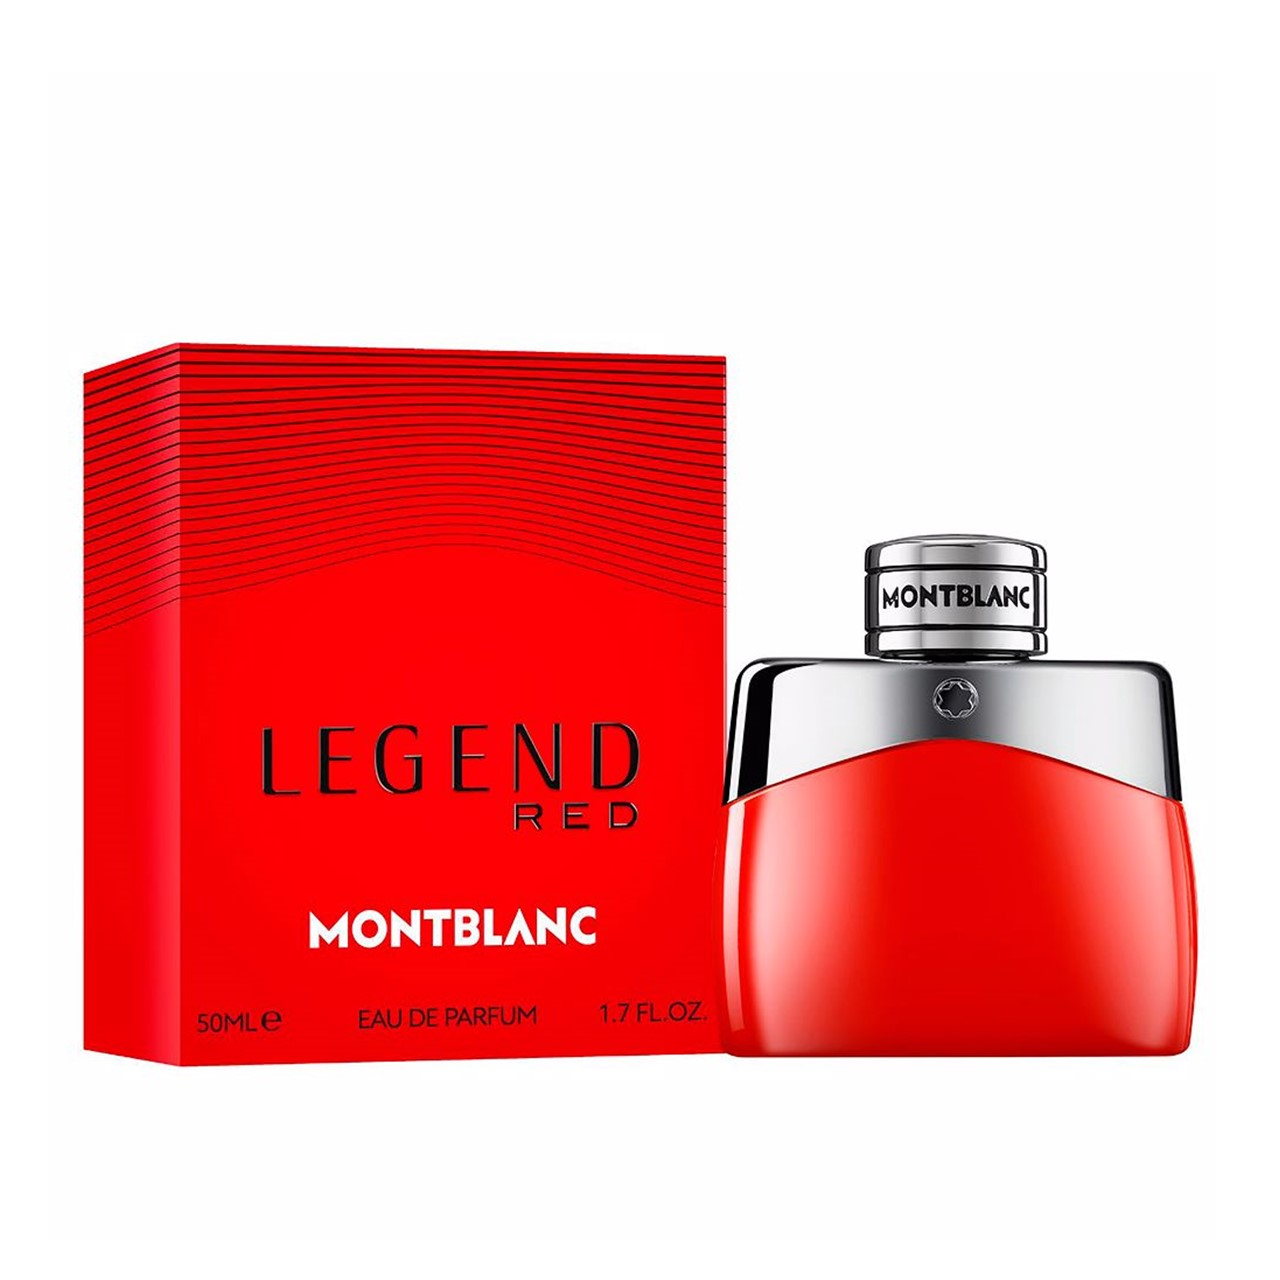 Montblanc Legend Red Eau de Parfum 50ml (1.7 fl oz)